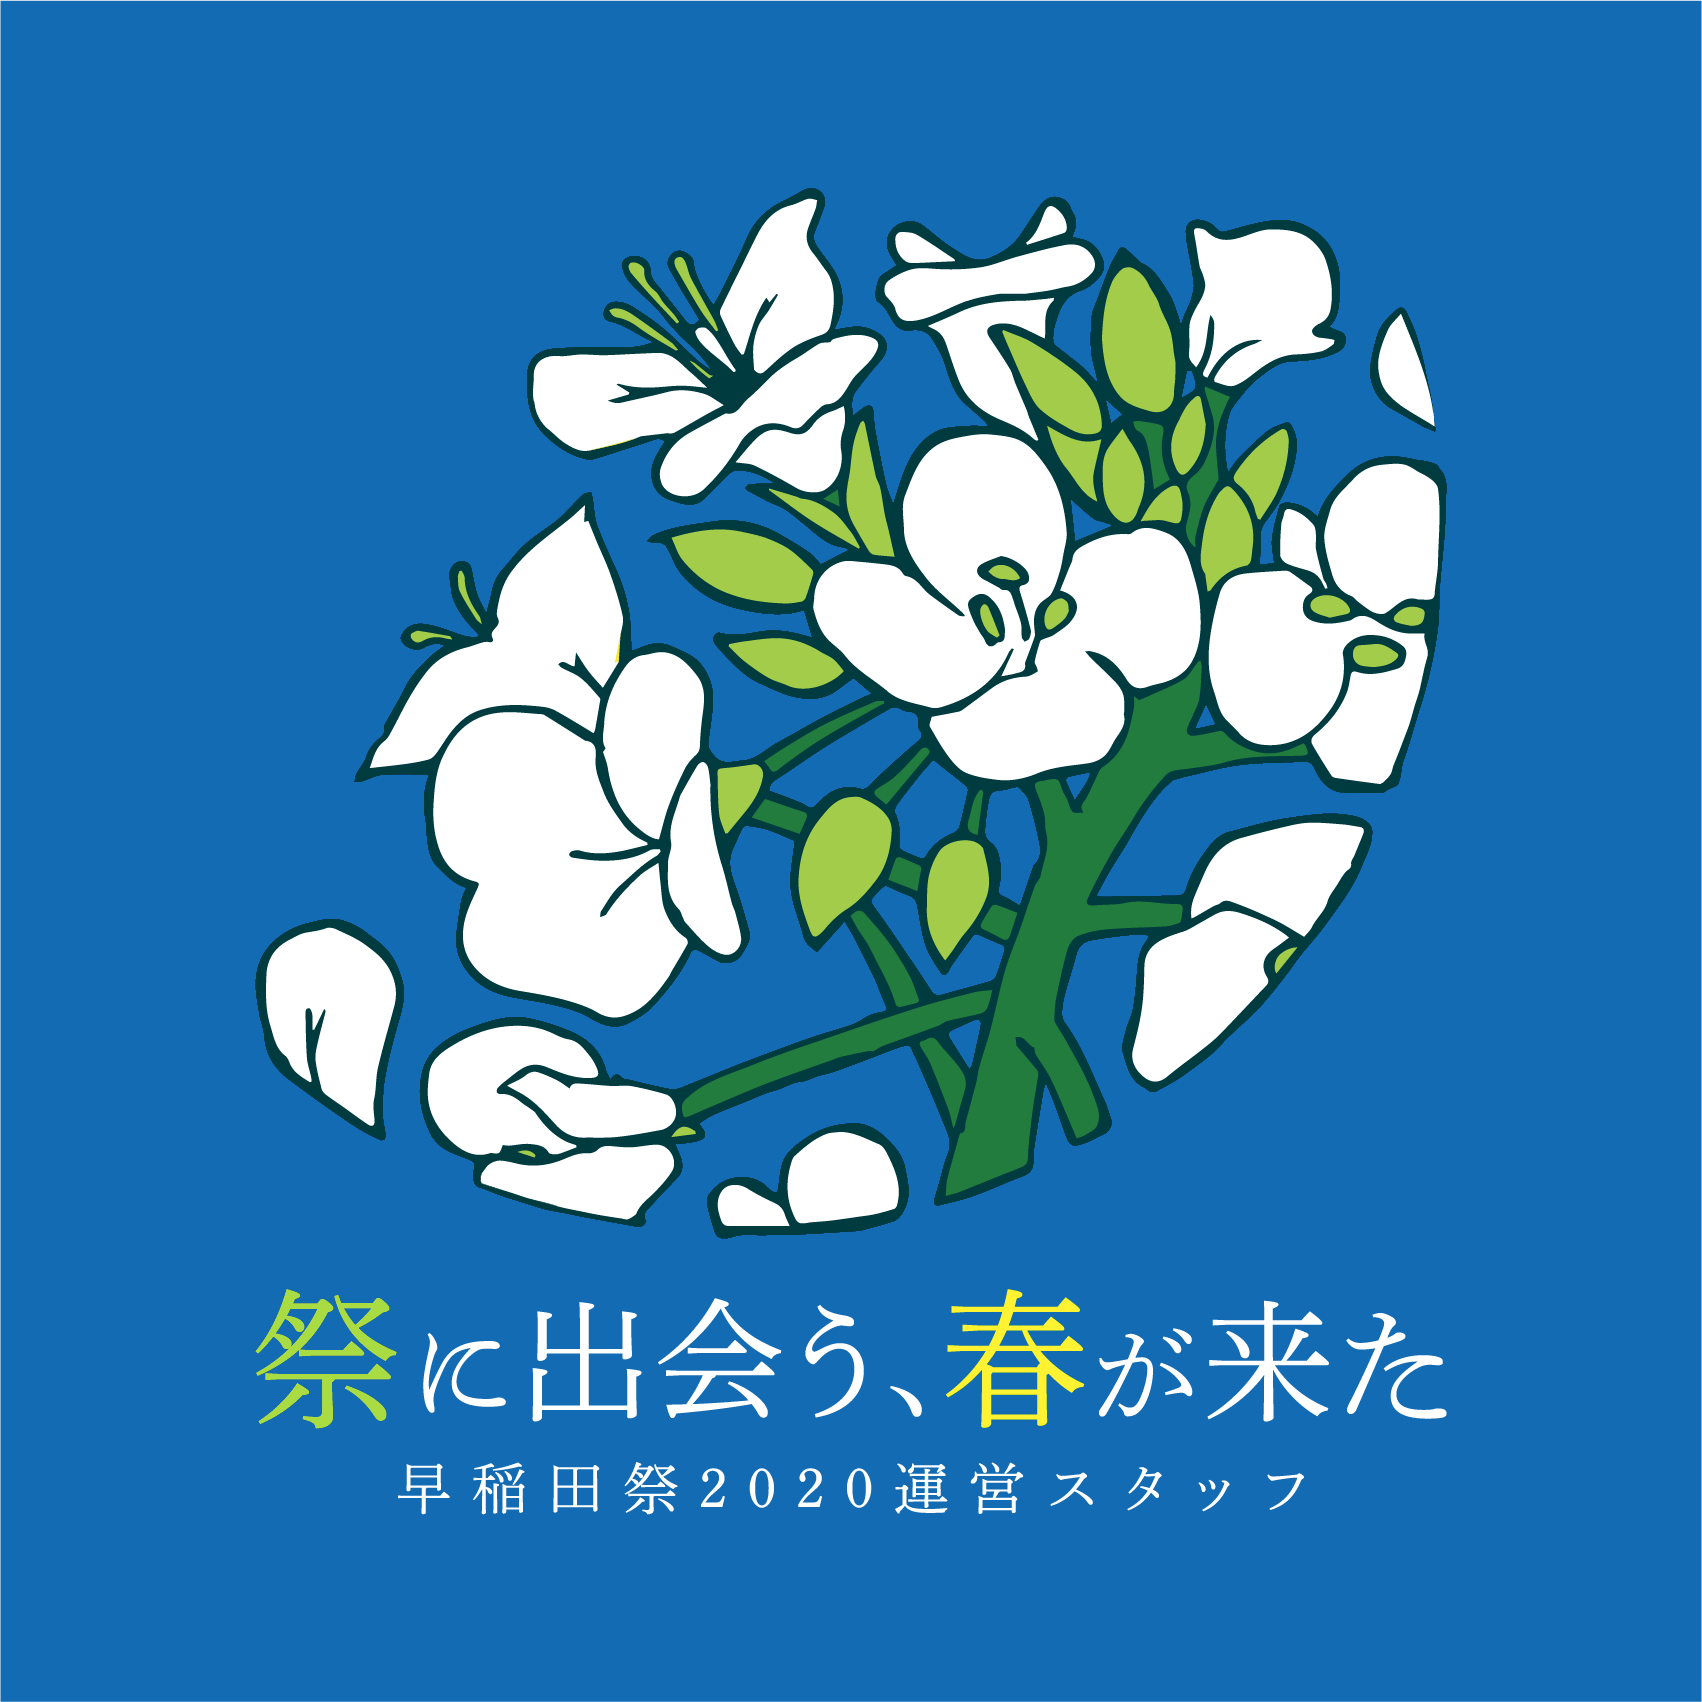 早稲田祭運営スタッフ新歓特設サイト